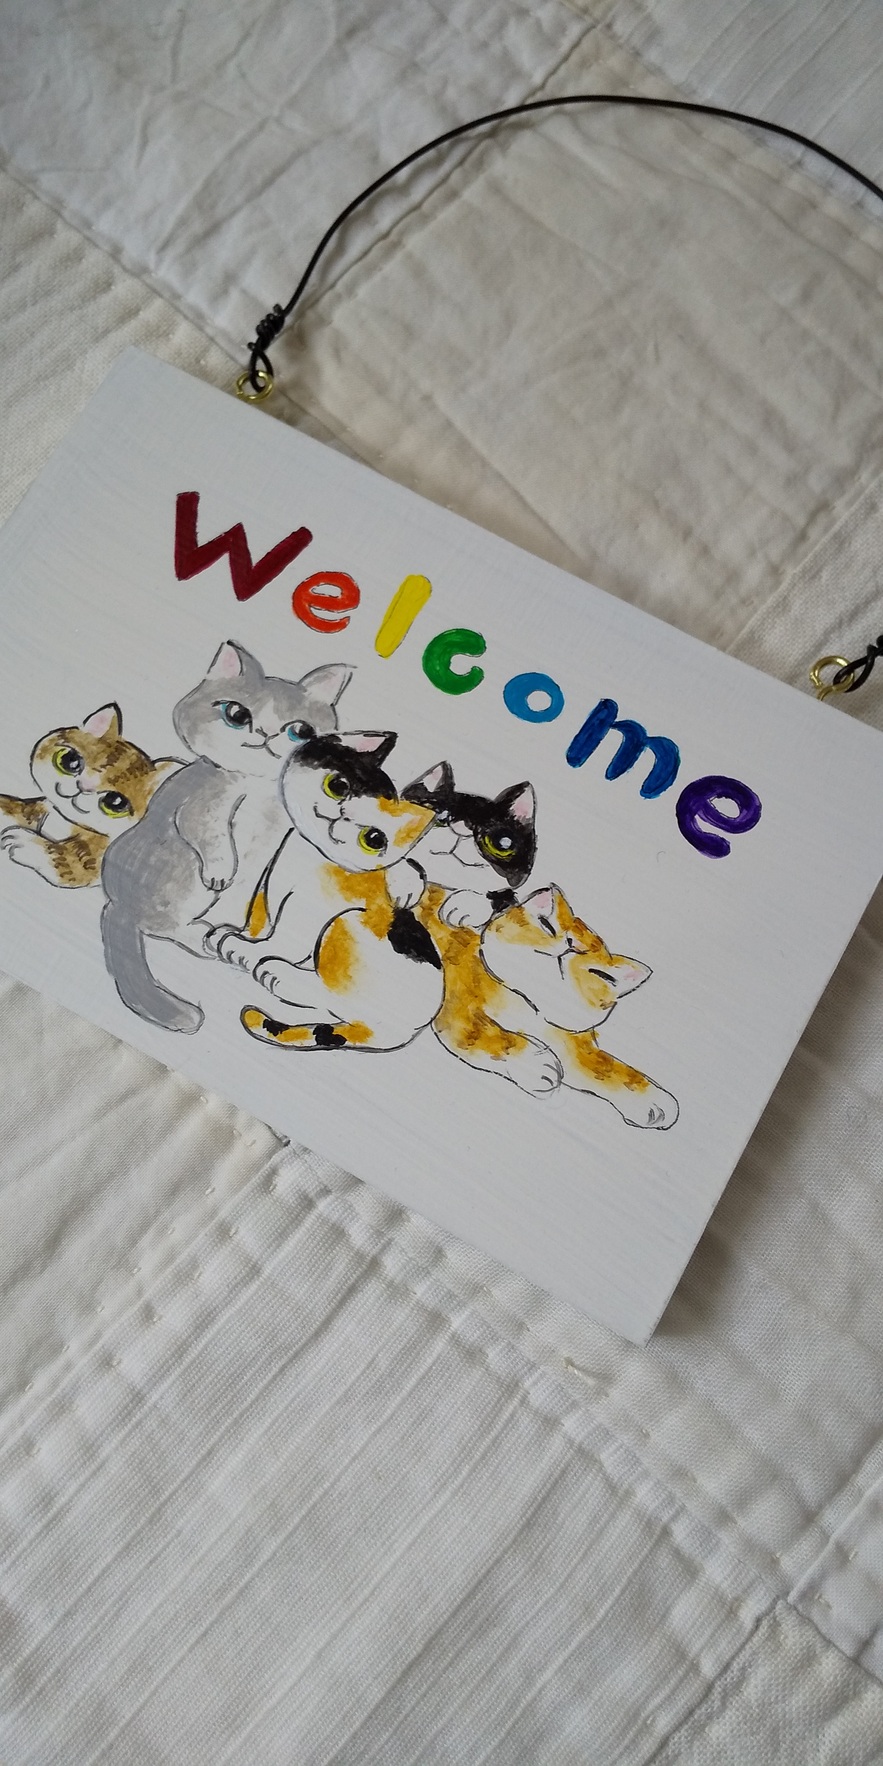 ウェルカムボード五匹の猫 Iichi ハンドメイド クラフト作品 手仕事品の通販